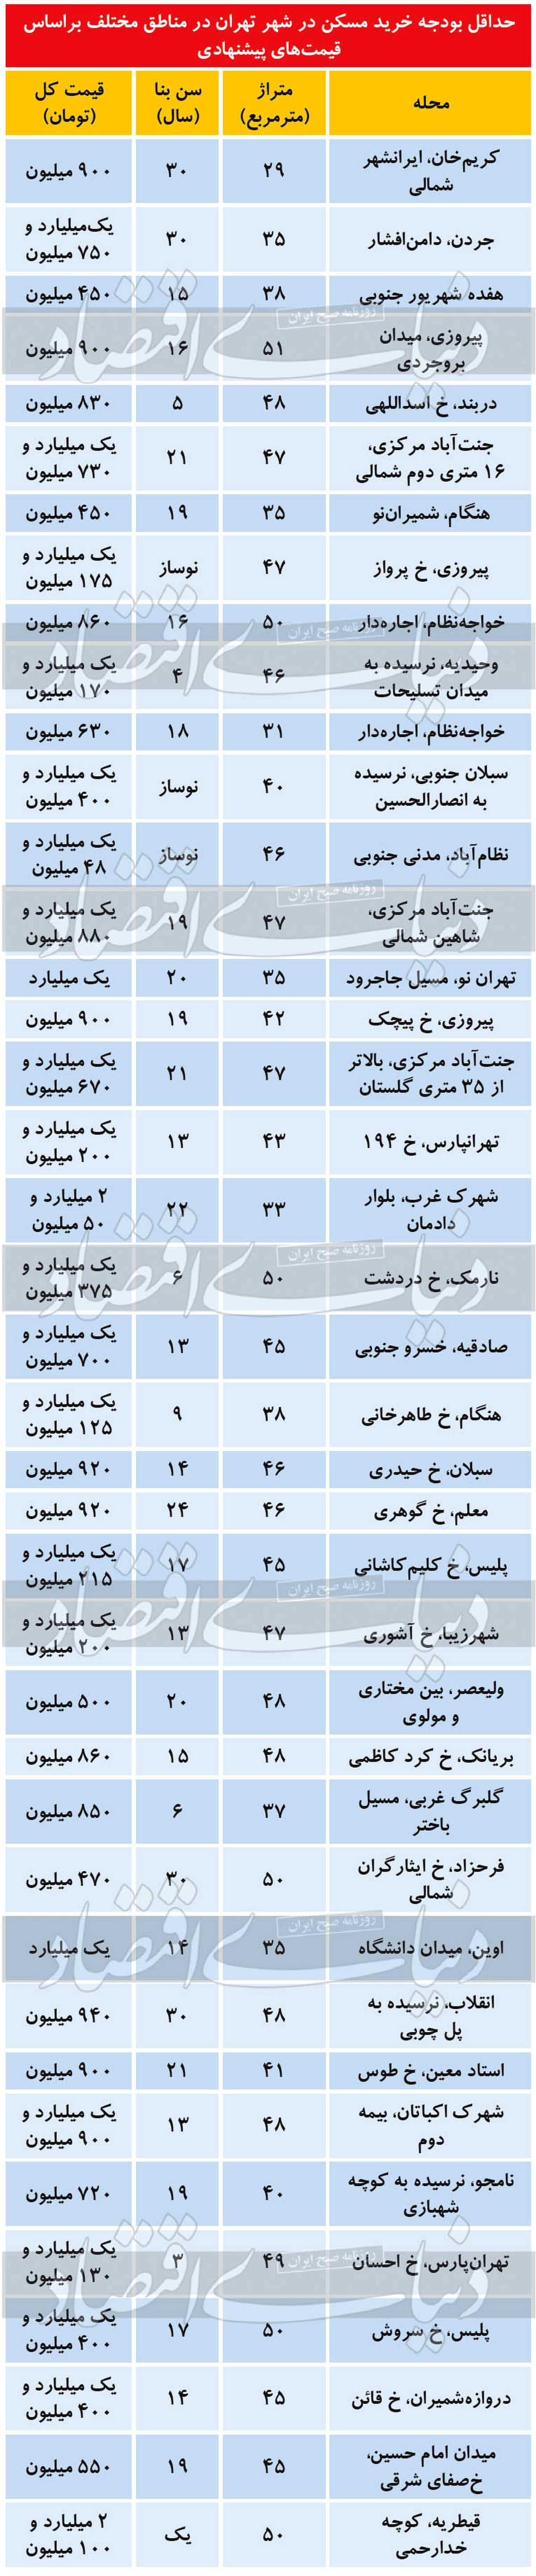 قیمت آپارتمان؛ حداقل بودجه خرید مسکن در تهران